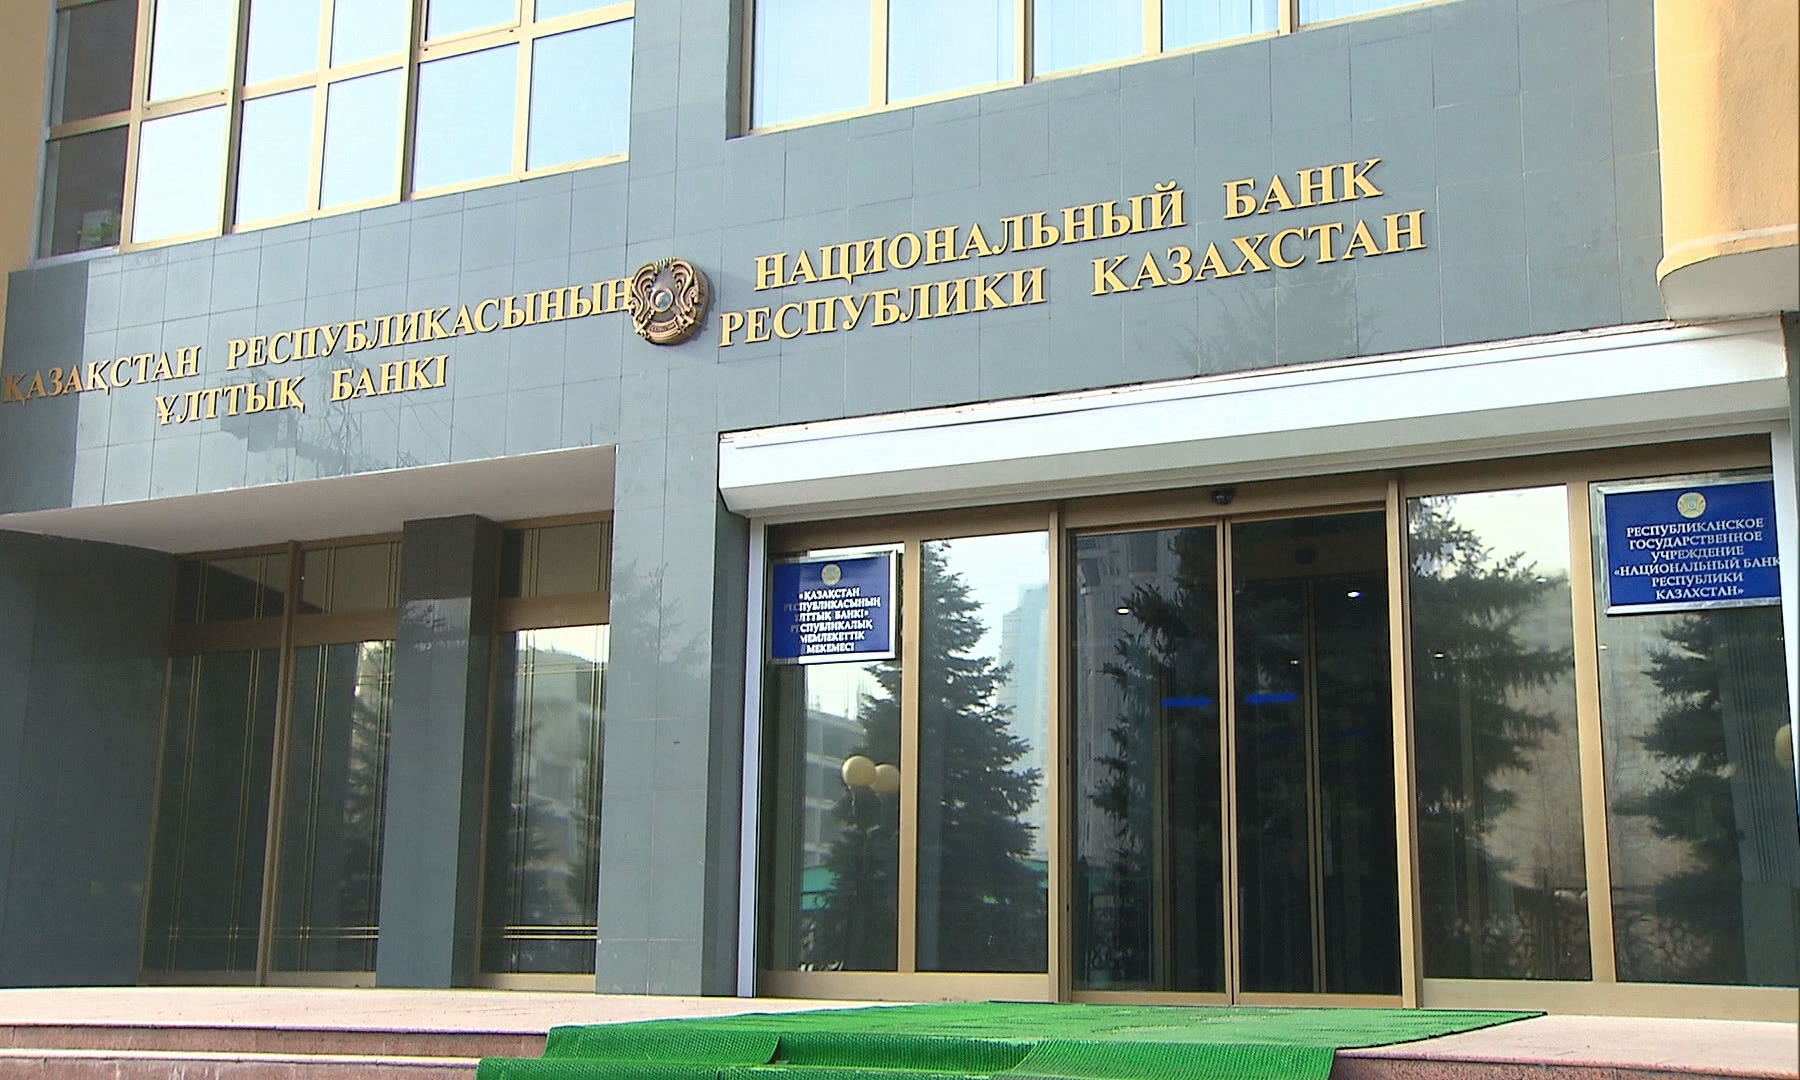 Нацбанк РК ответил на депутатский запрос о выборе внешних управляющих пенсионными активами ЕНПФ